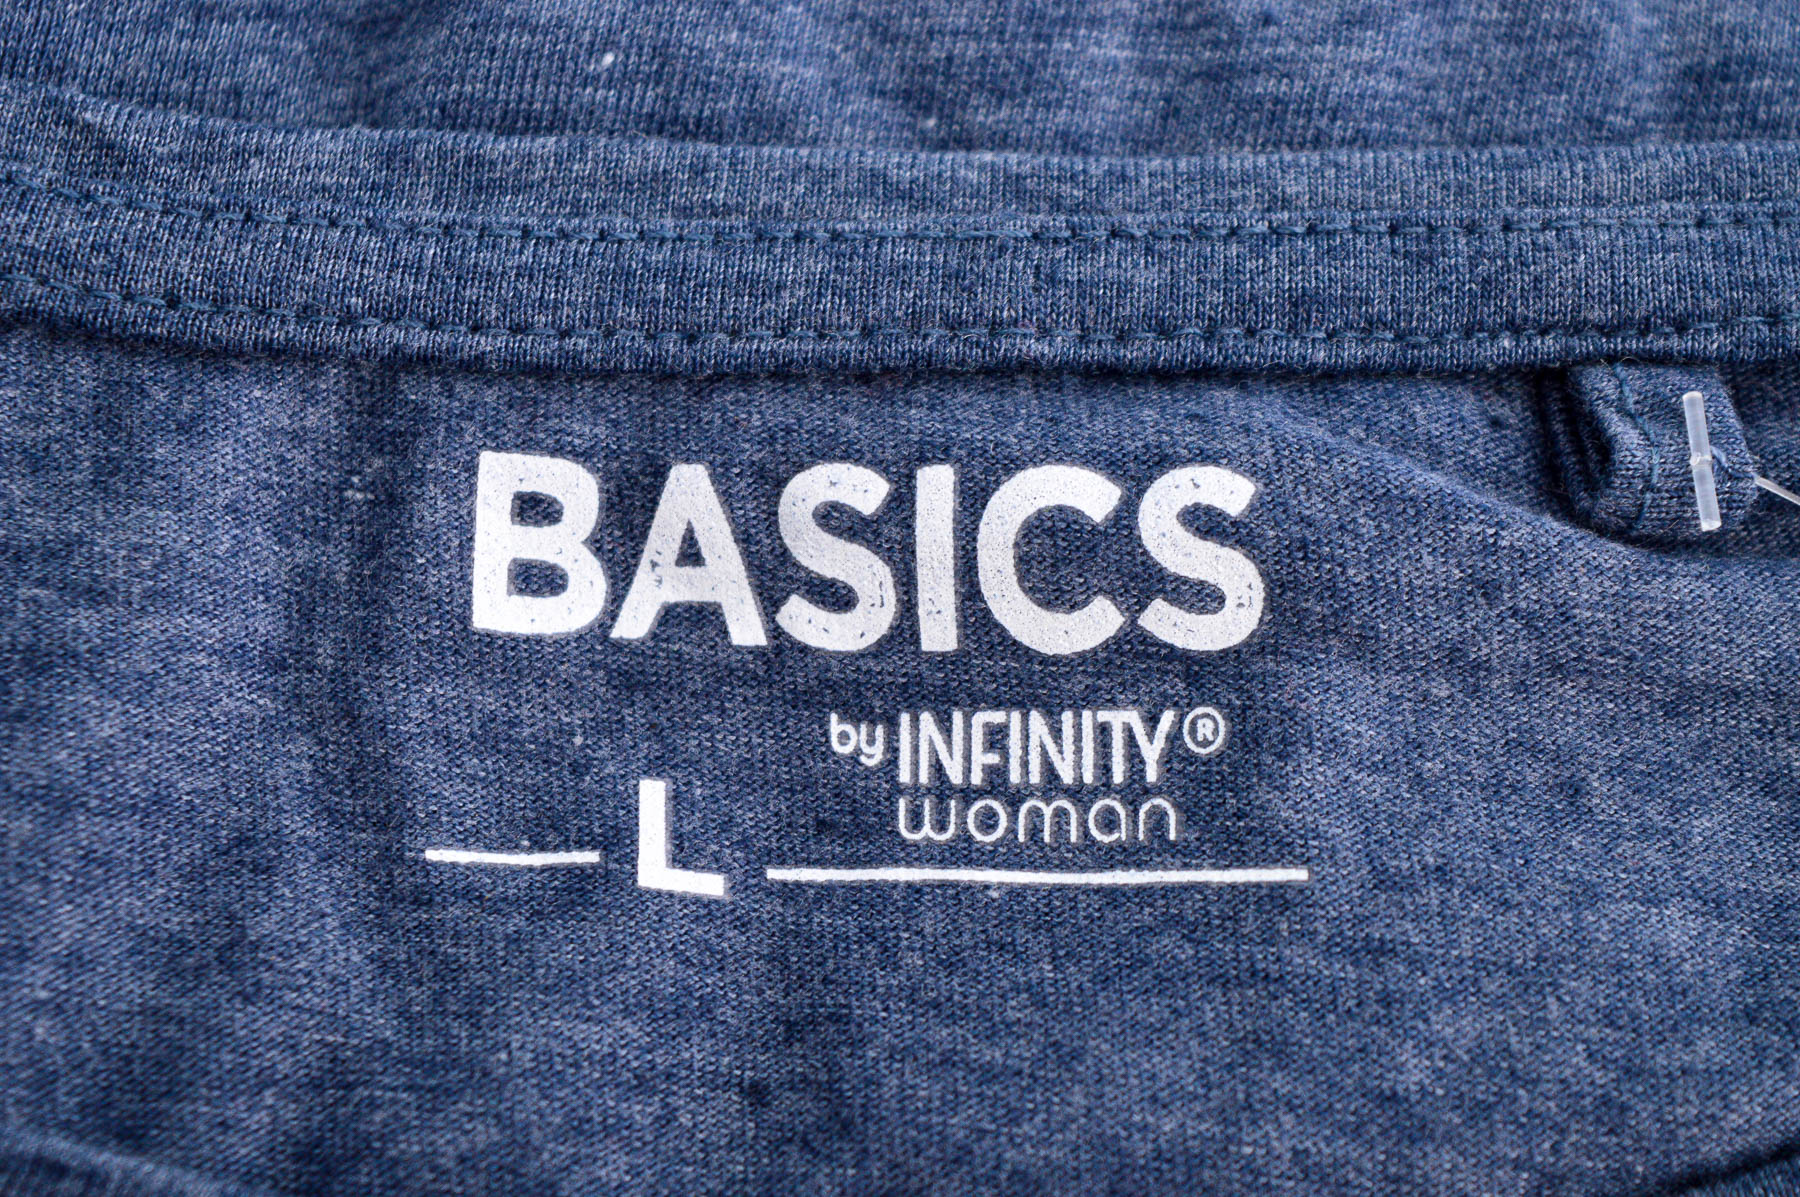 Γυναικεία μπλούζα - BASICS by INFINITY woman - 2